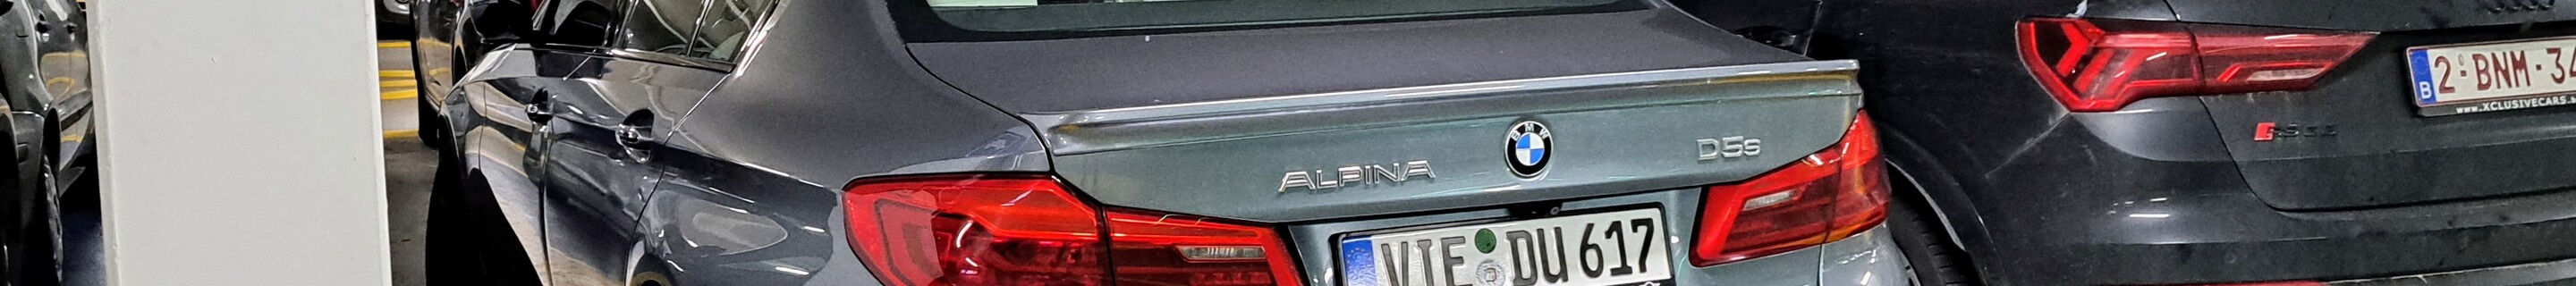 Alpina D5 S Allrad 2017